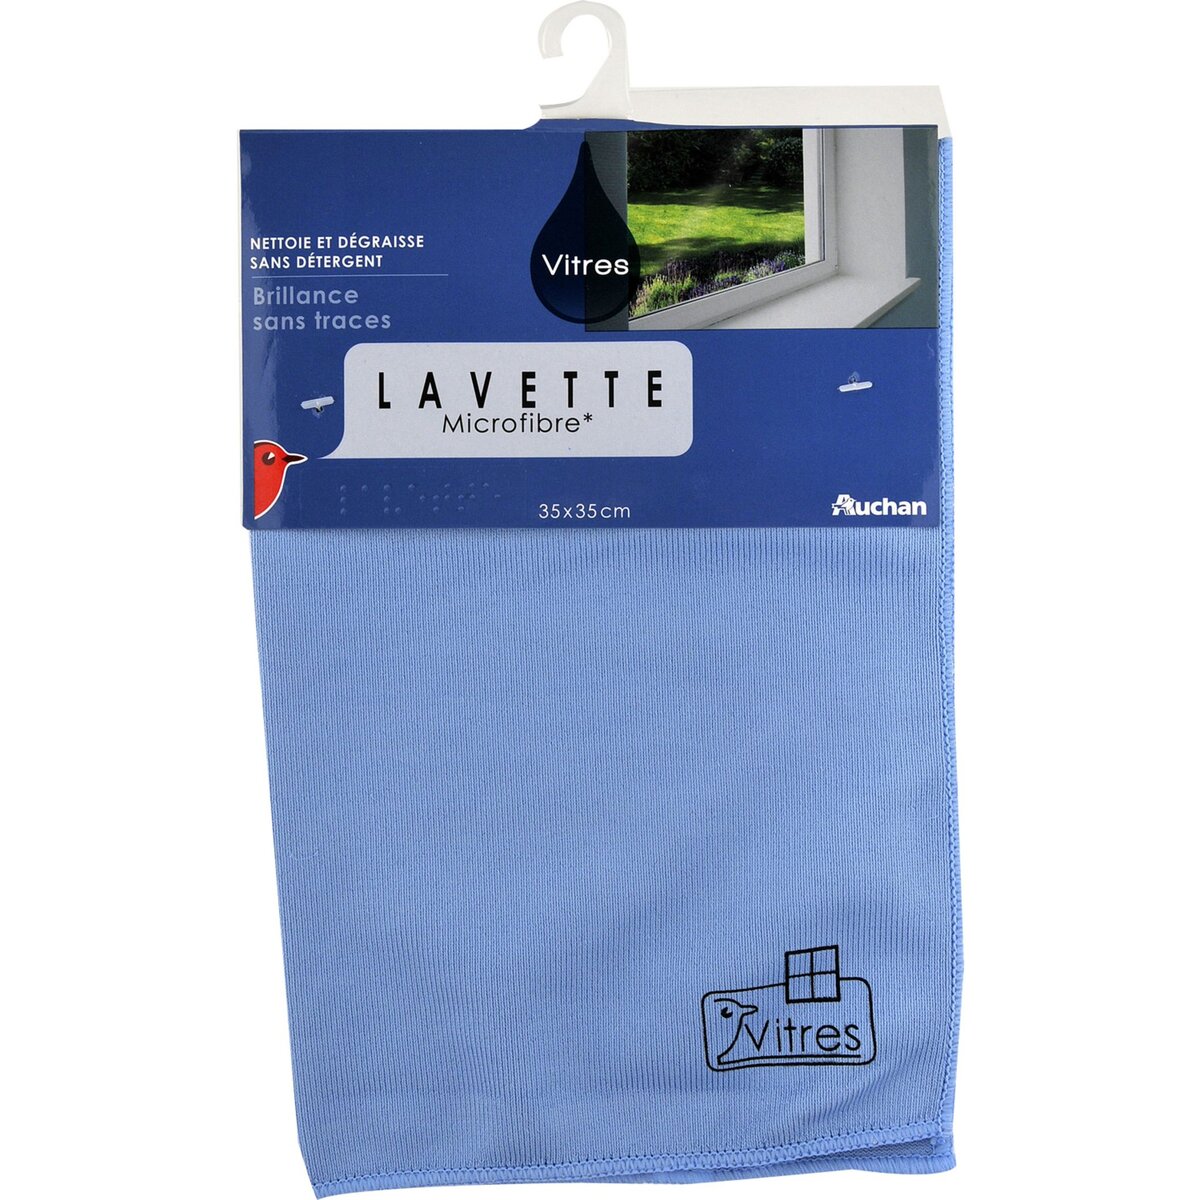 AUCHAN Lavette microfibre spéciale brillance 35x35cm 1 lavette